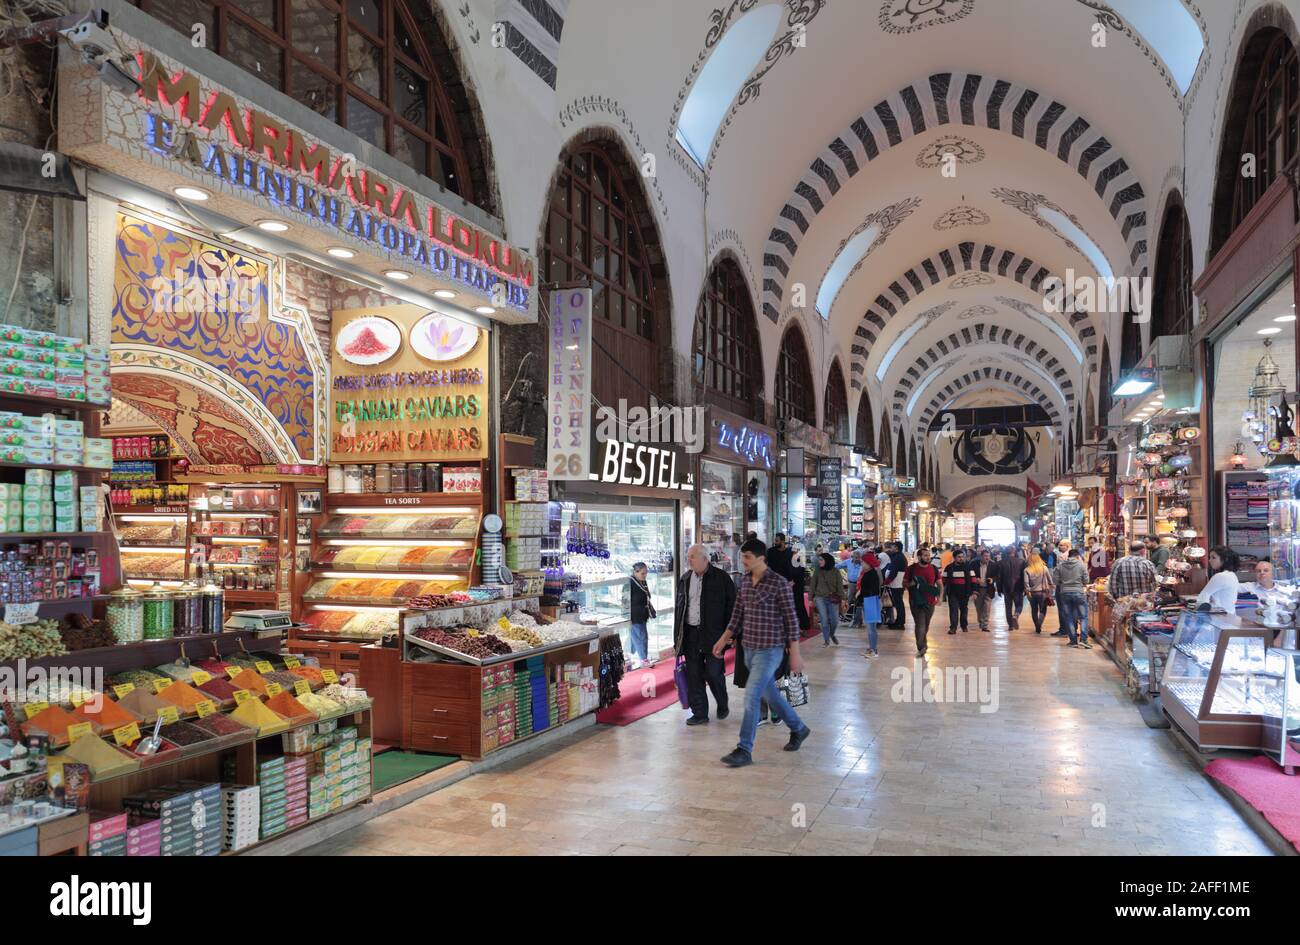 Estambul, Turquía - Octubre 13, 2017: la gente en el Bazar de las especias. Es el segundo mayor complejo comercial cubierto en la ciudad tras el Gran Bazar Foto de stock